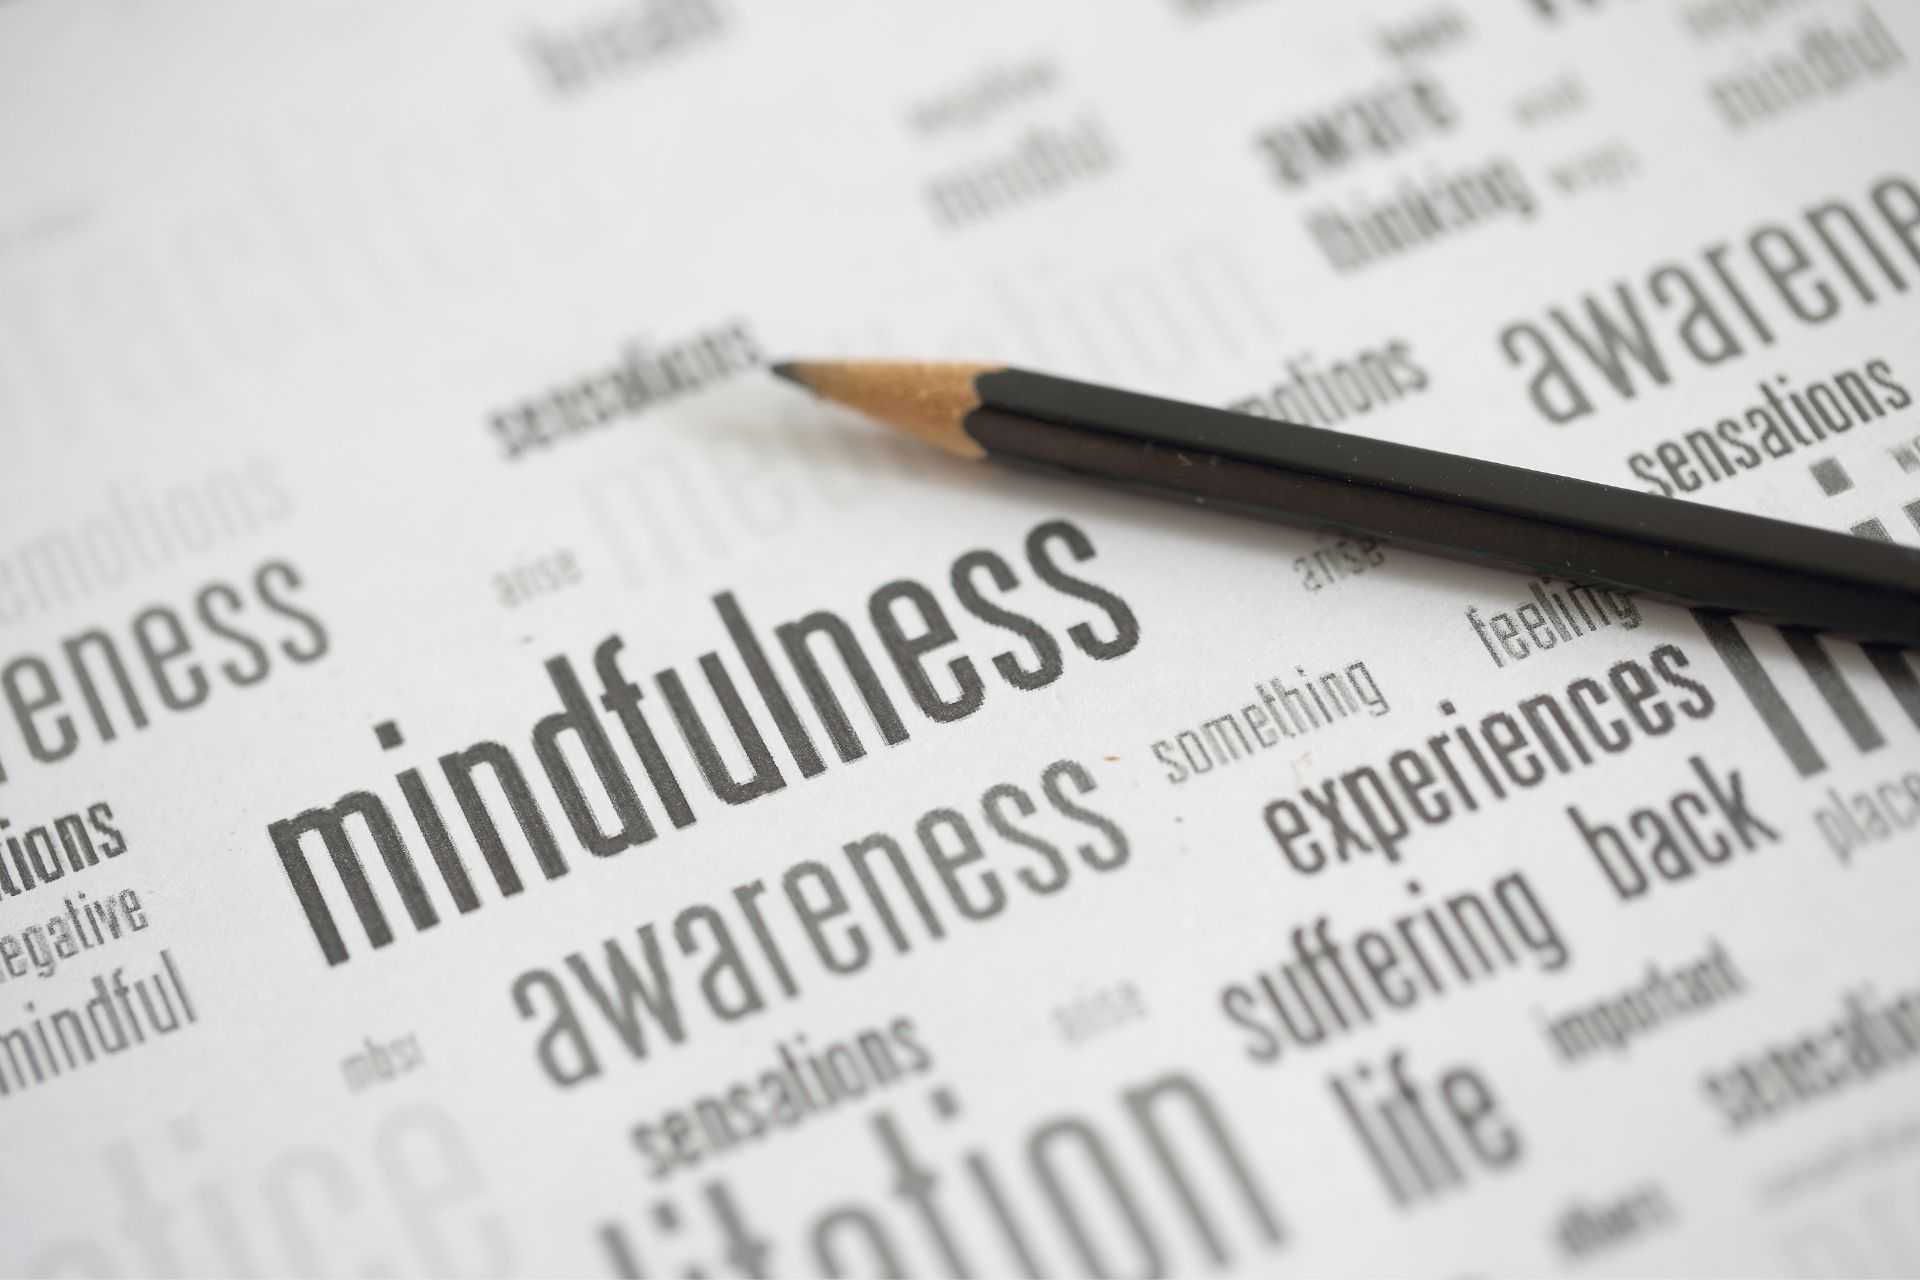 Uważność mindfulness definicja stawiam na edukacje